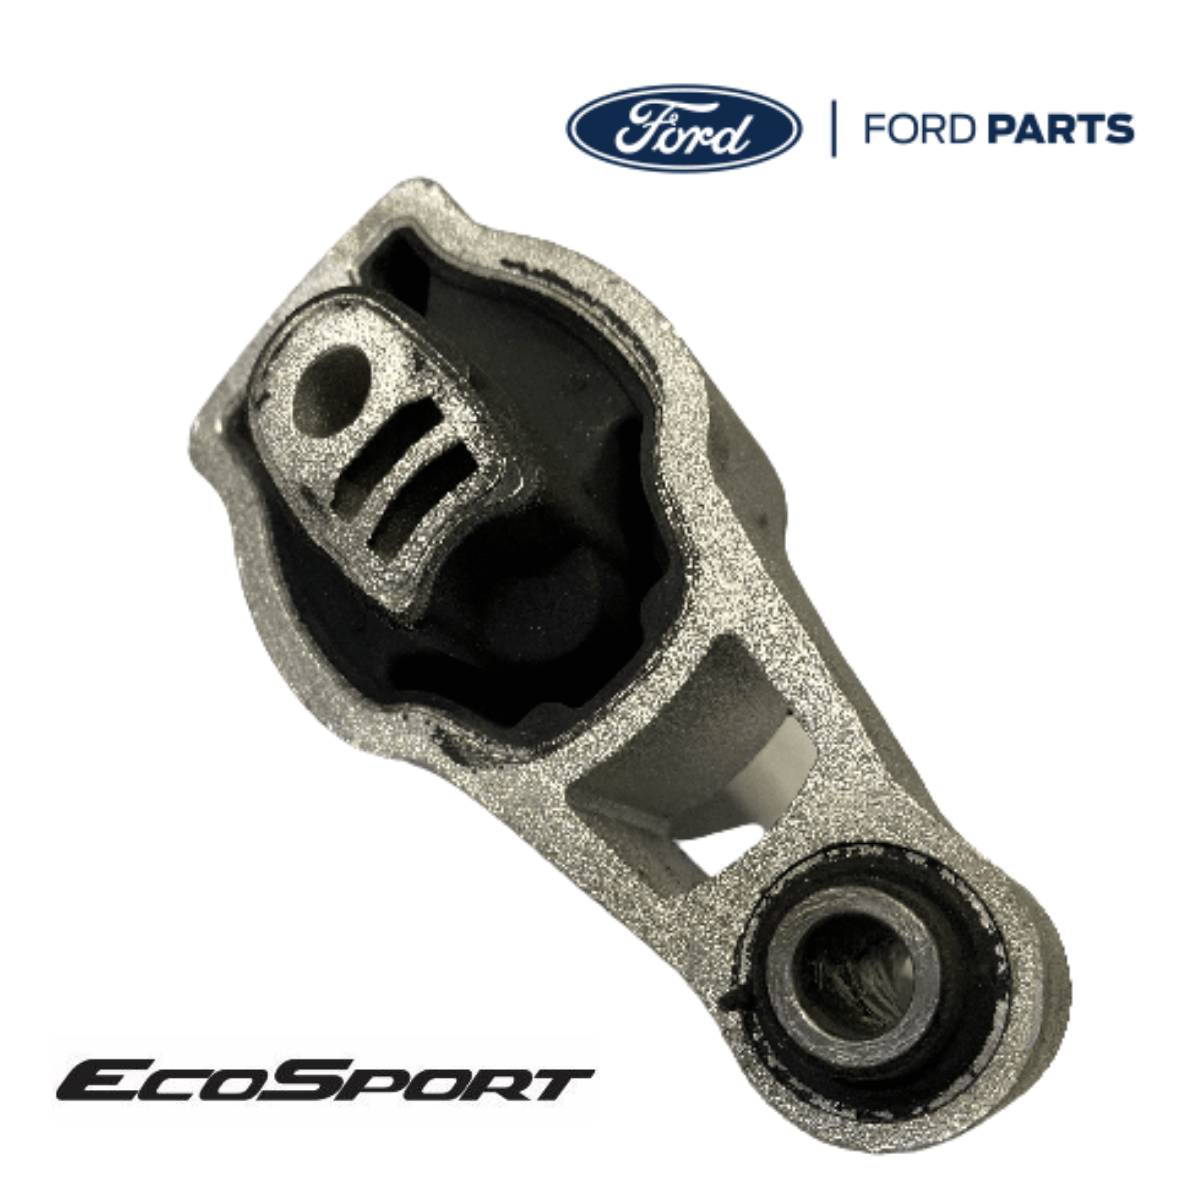 Kit Distribución Ford Fiesta 1.6L Modelo 2011/2019 – AutopartesyFord